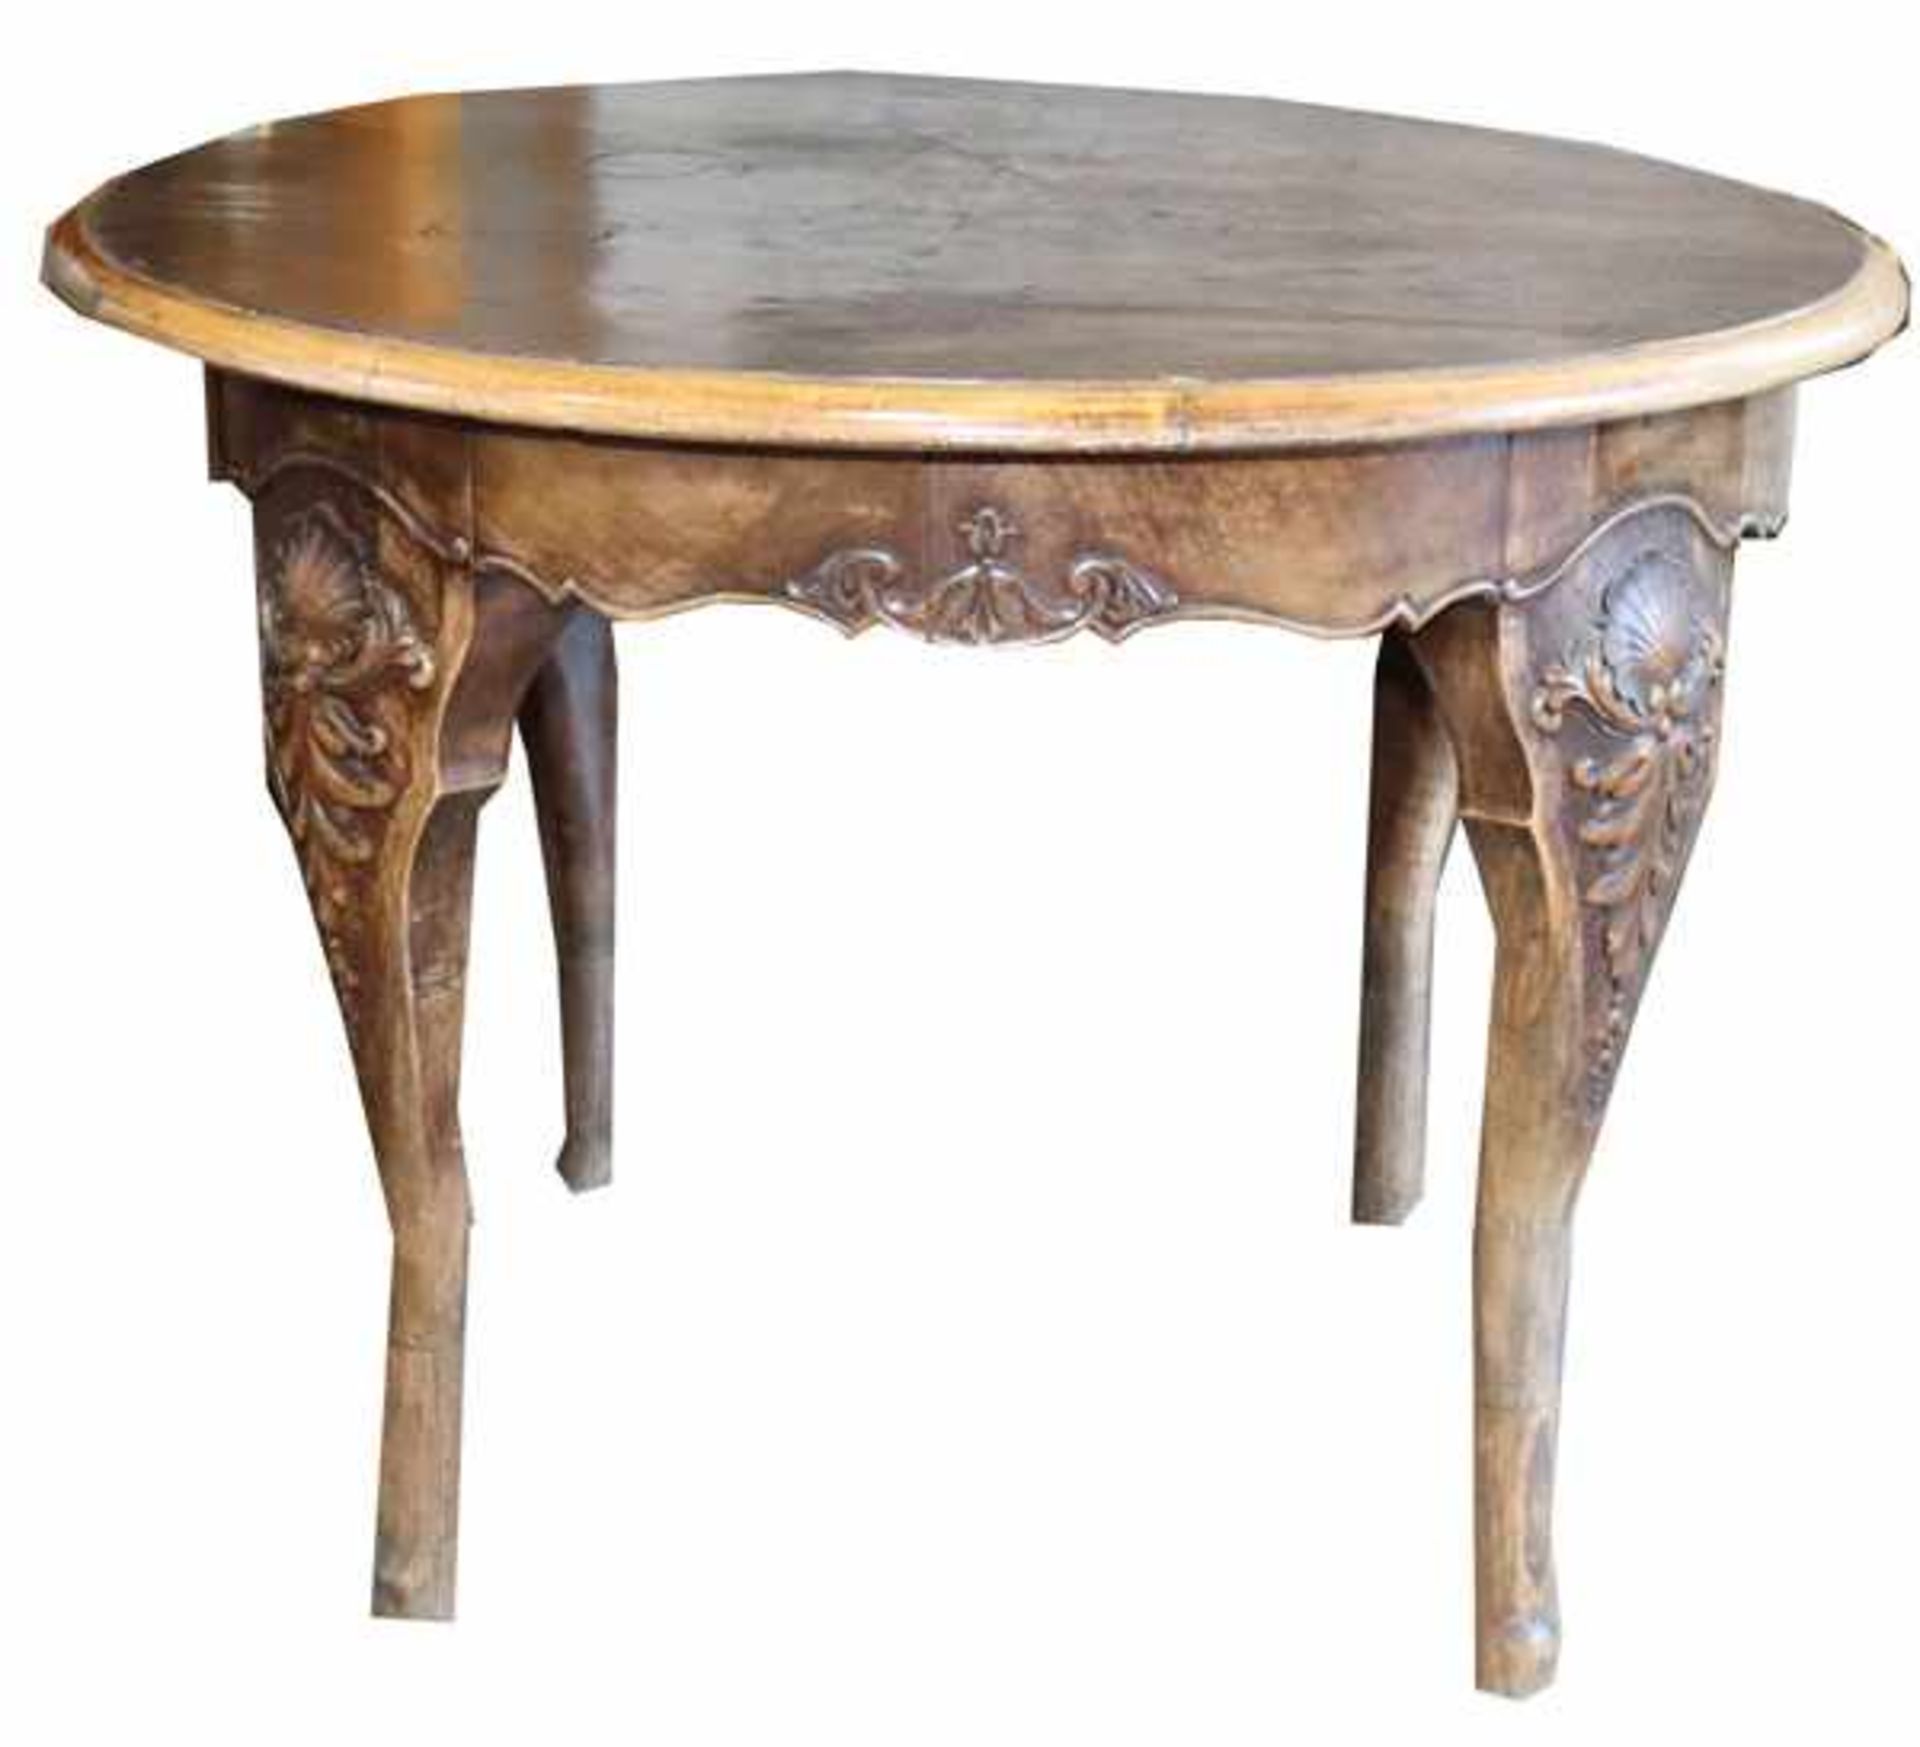 Runder Tisch auf 4 Beinen, teils beschnitzt, Gebrauchsspuren, Tischplatte beschädigt, H 77 cm, D 100